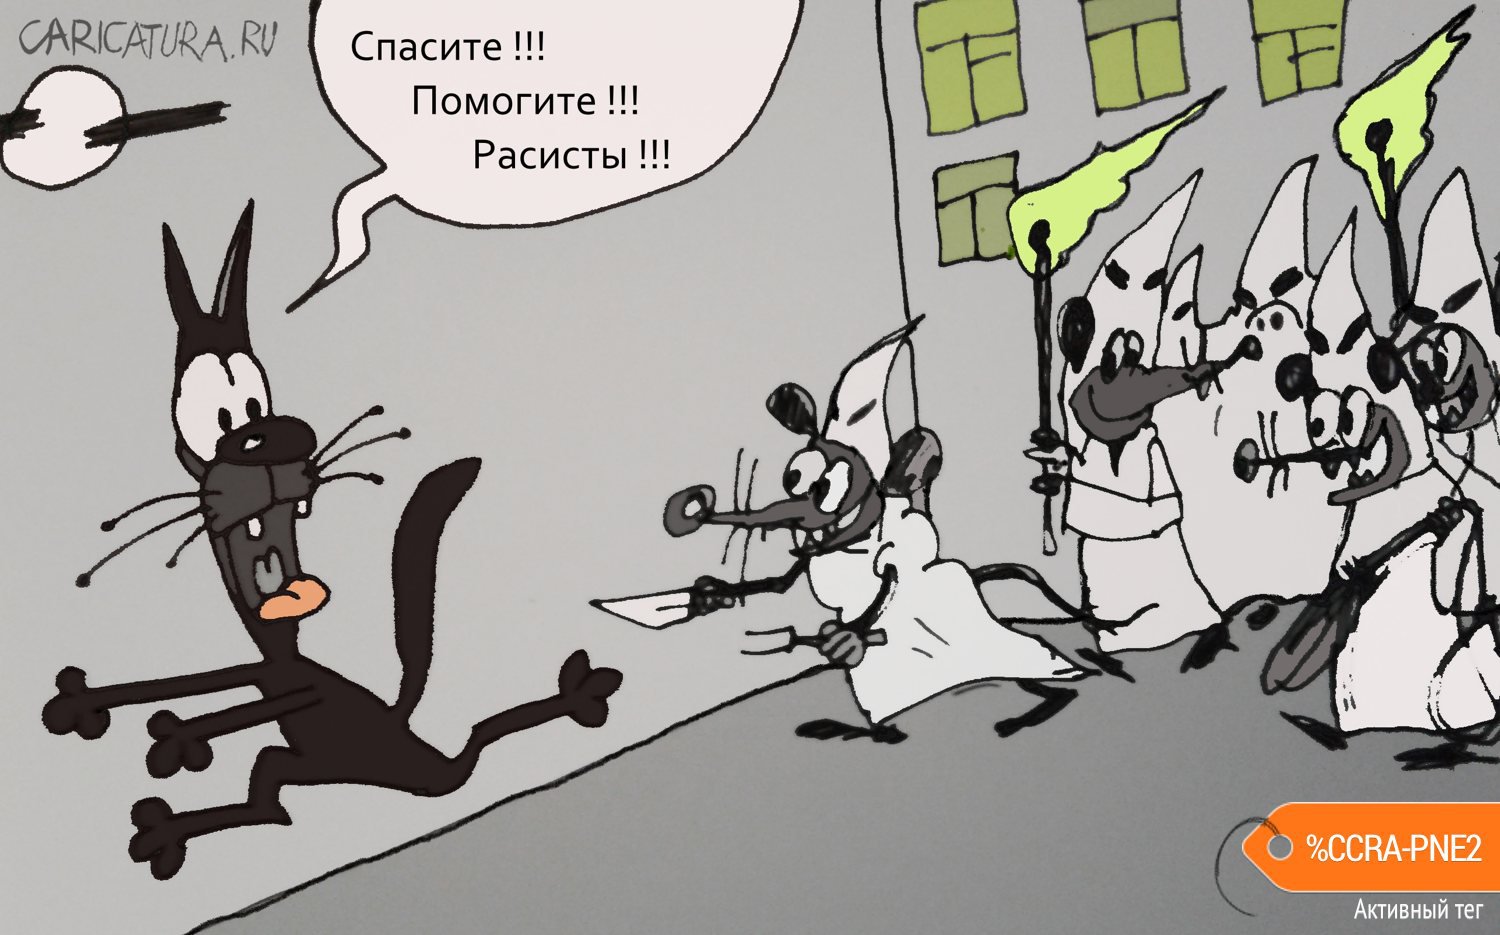 Карикатура "Плохо быть черным", Юрий Величко